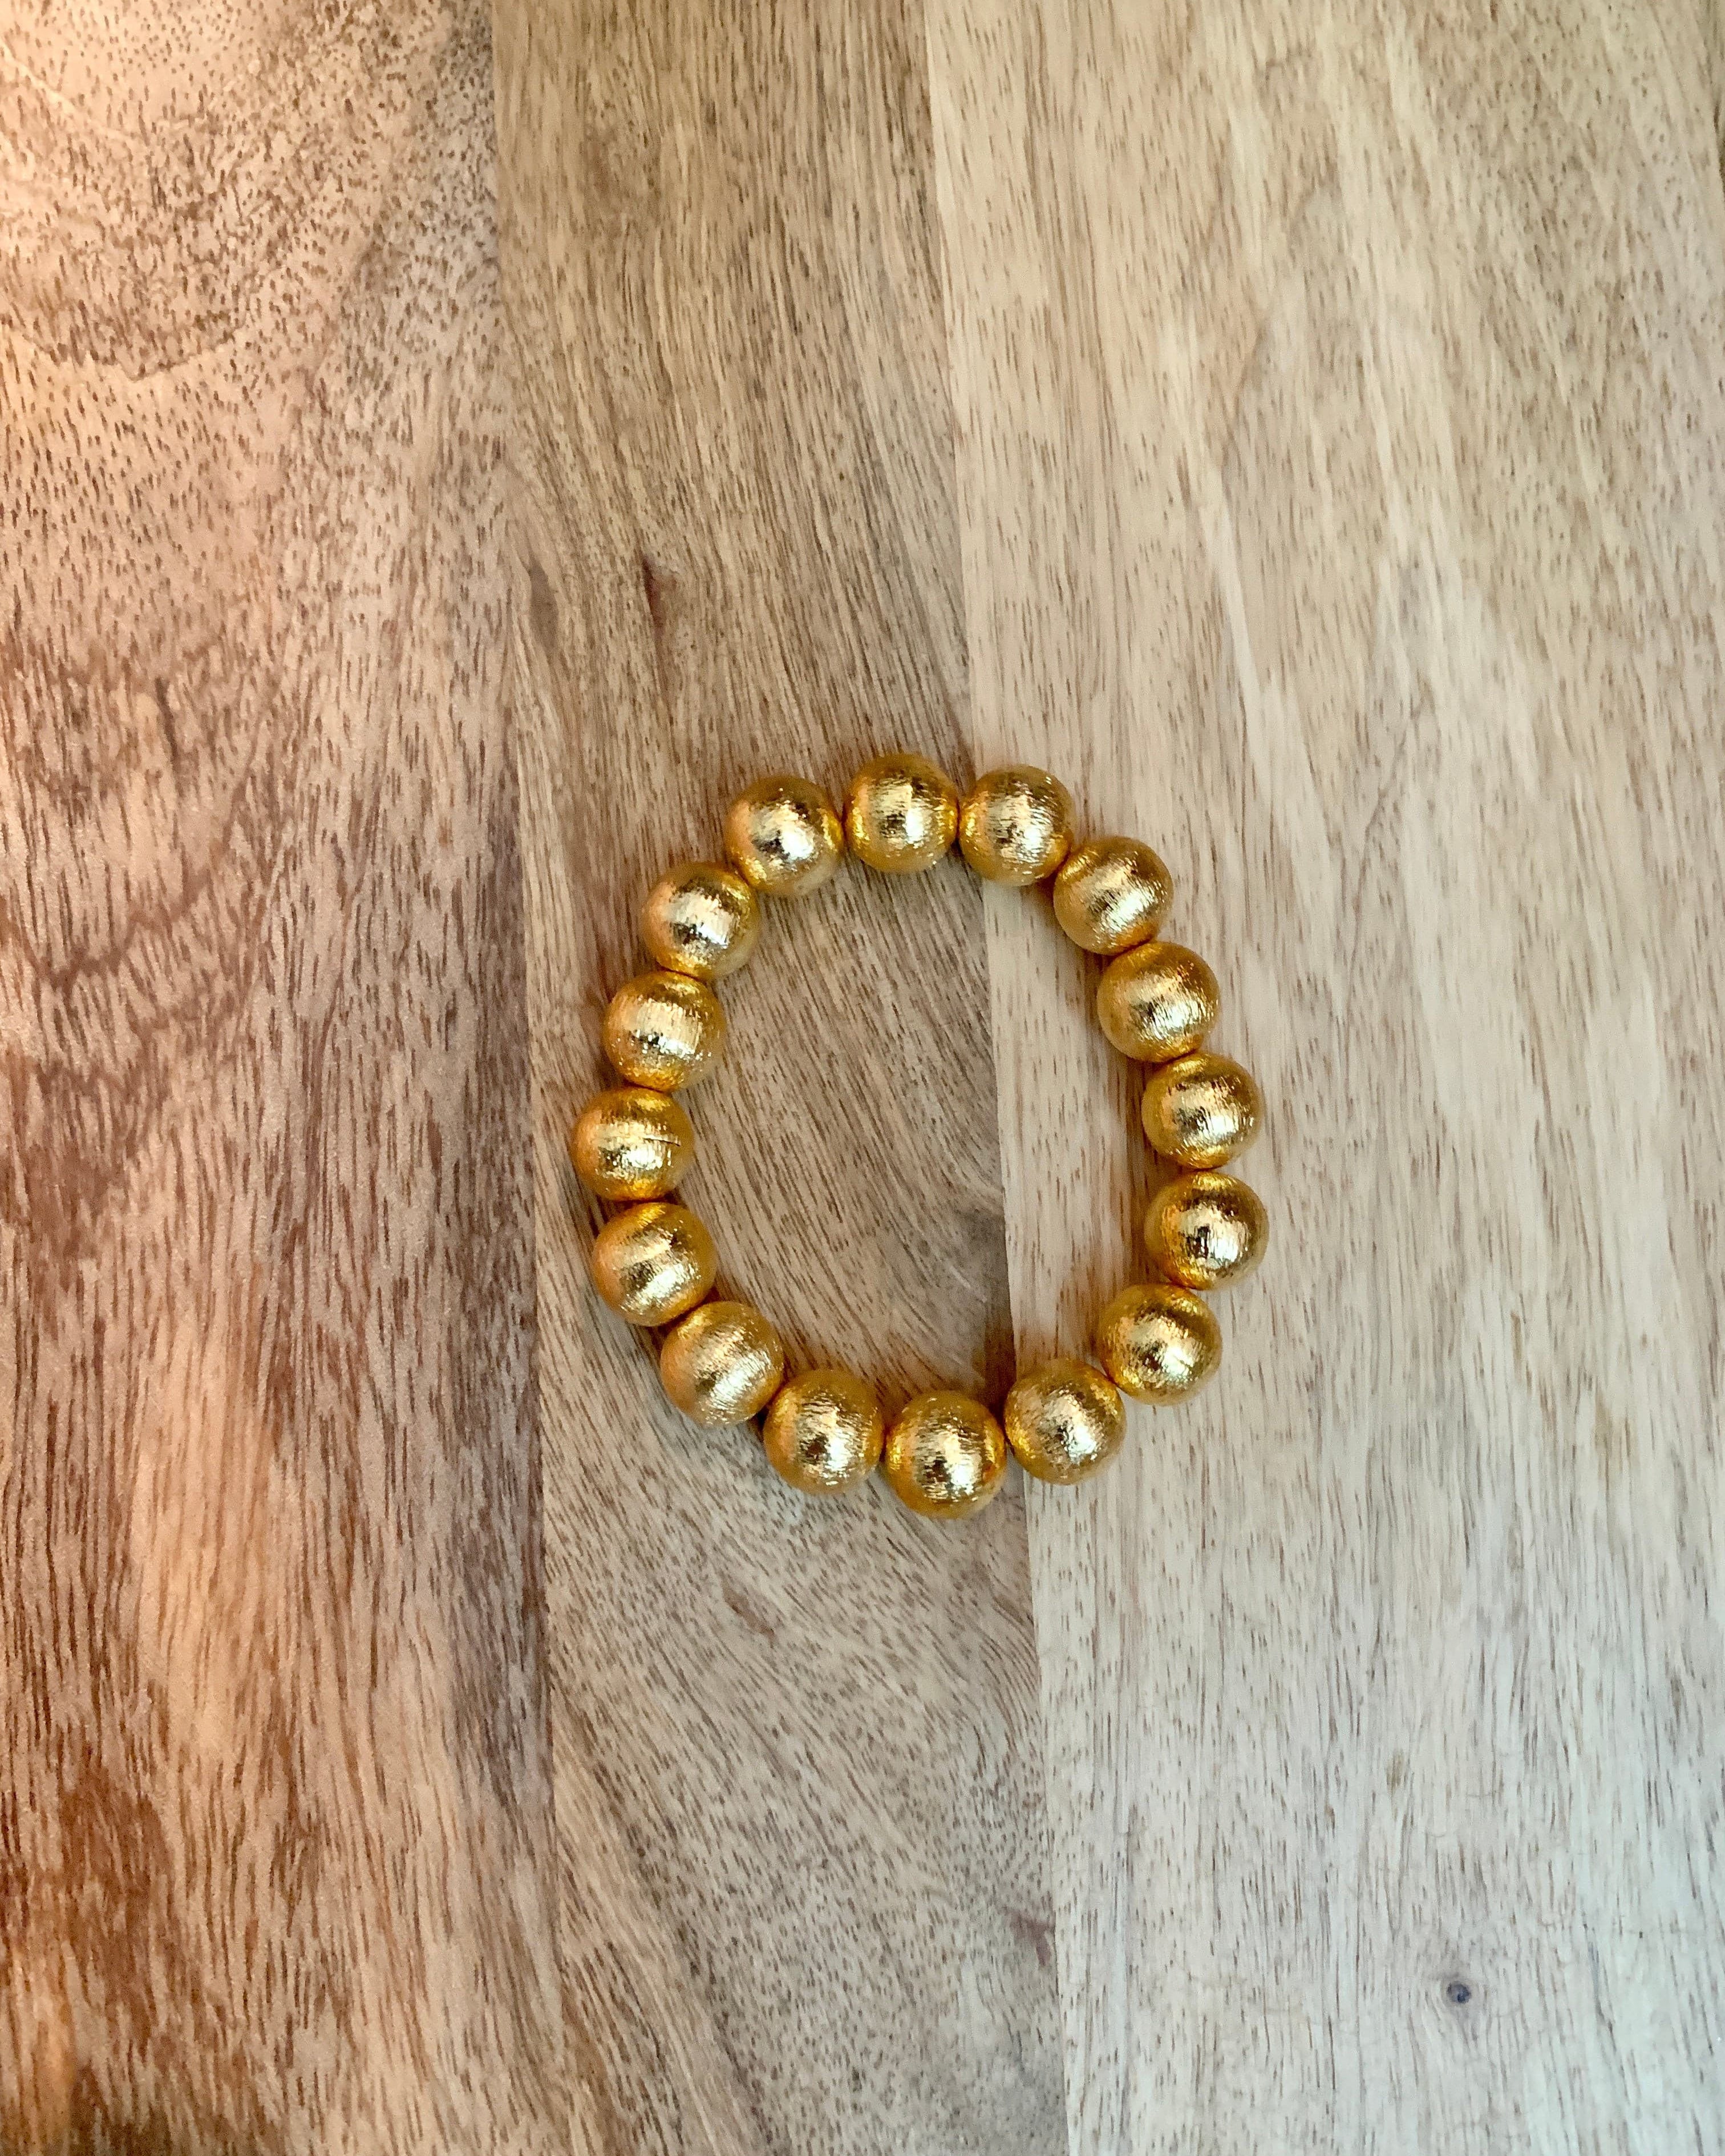 10mm Gold Bead Bracelet.